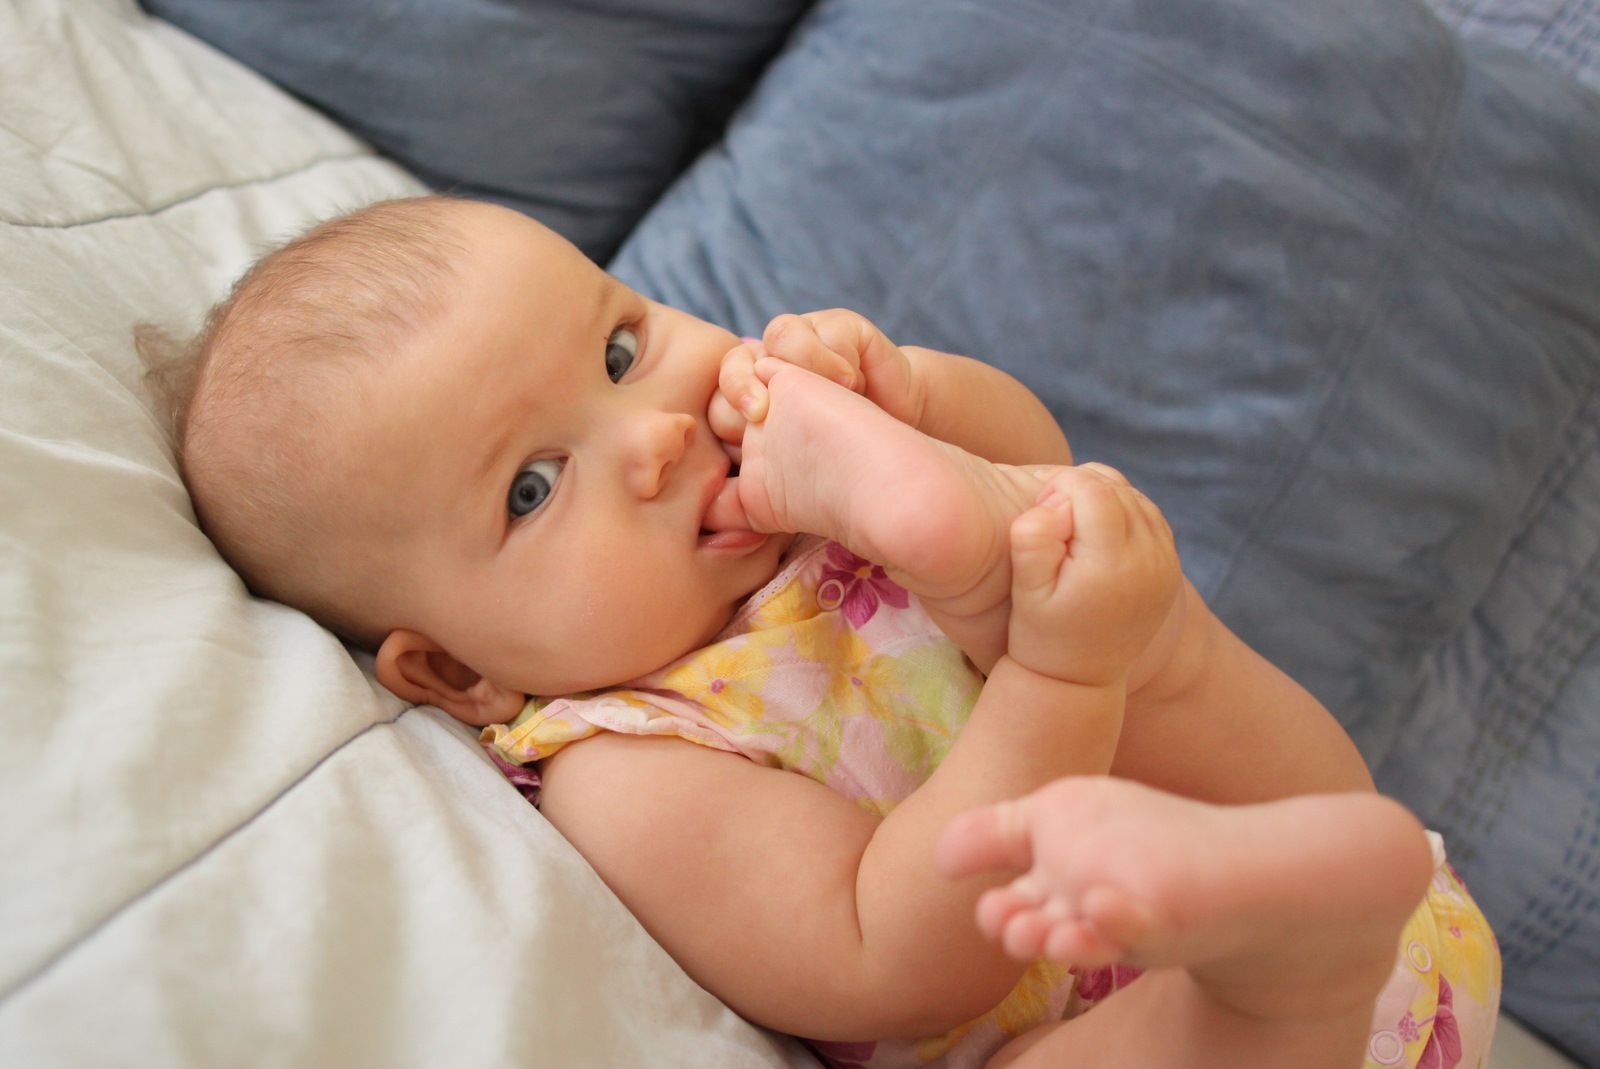 Норма и отклонение мышечного тонуса у новорождённых. гипертонус, гипотонус, дистония